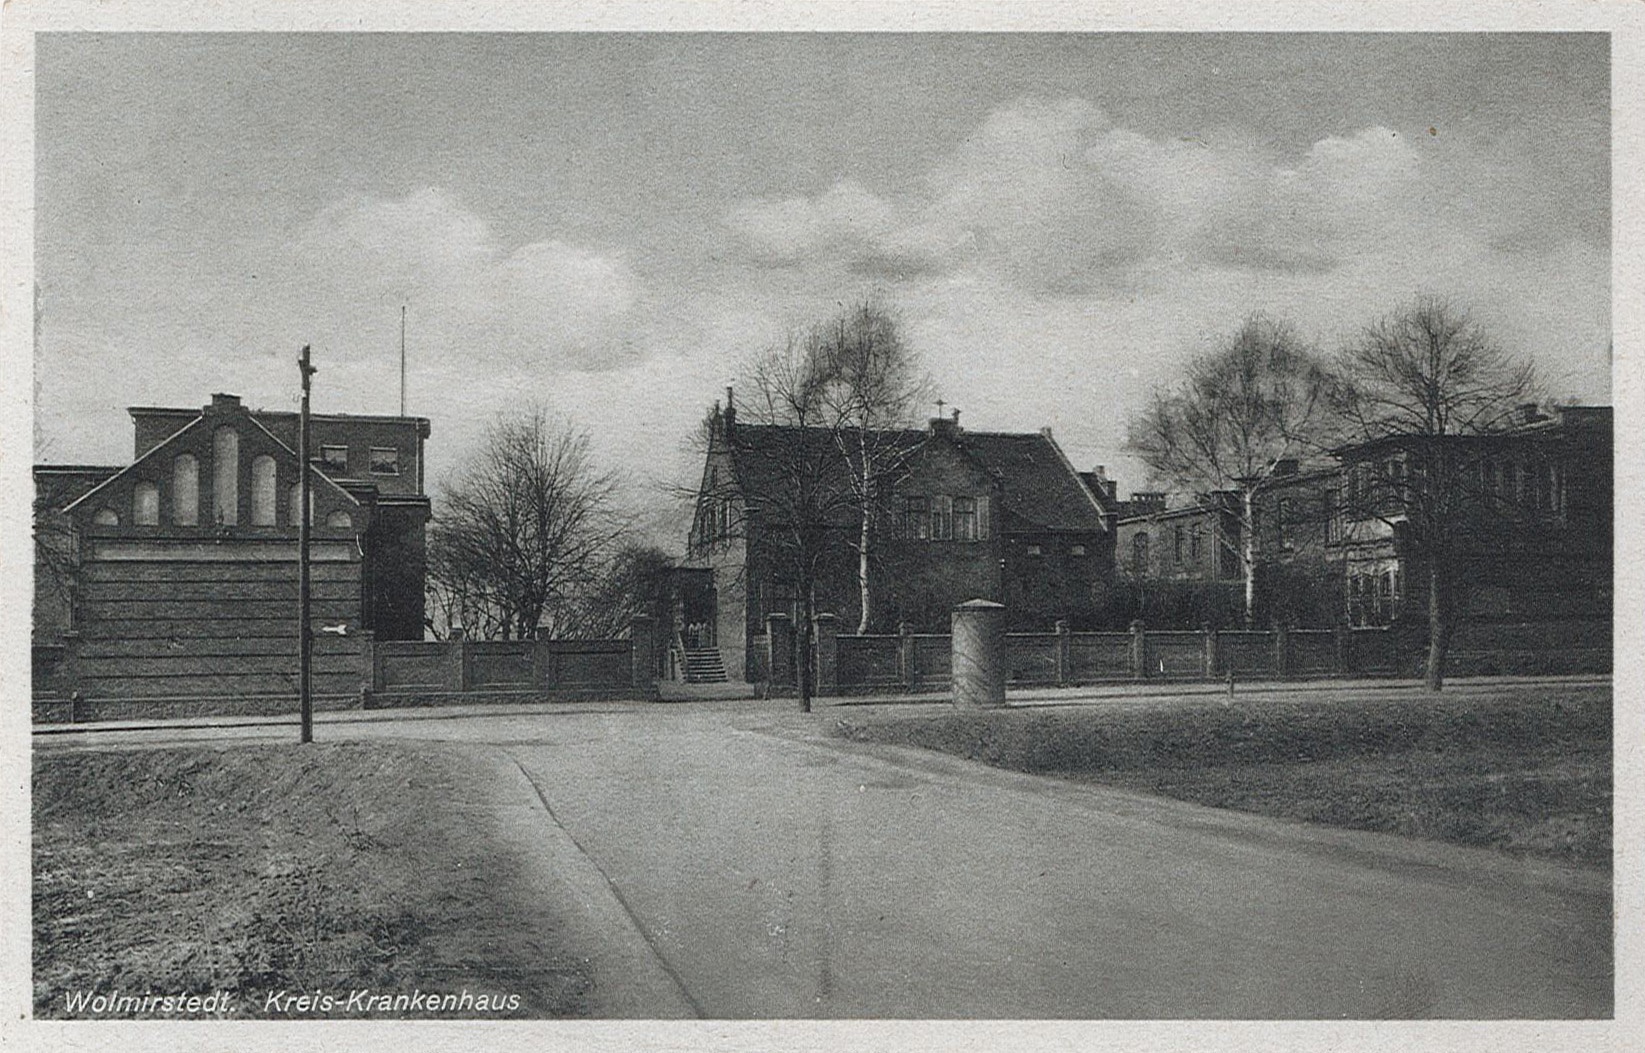 Postkarte mit Ansicht des Kreiskrankenhauses Wolmirstedt, 1920? (Museum Wolmirstedt RR-F)